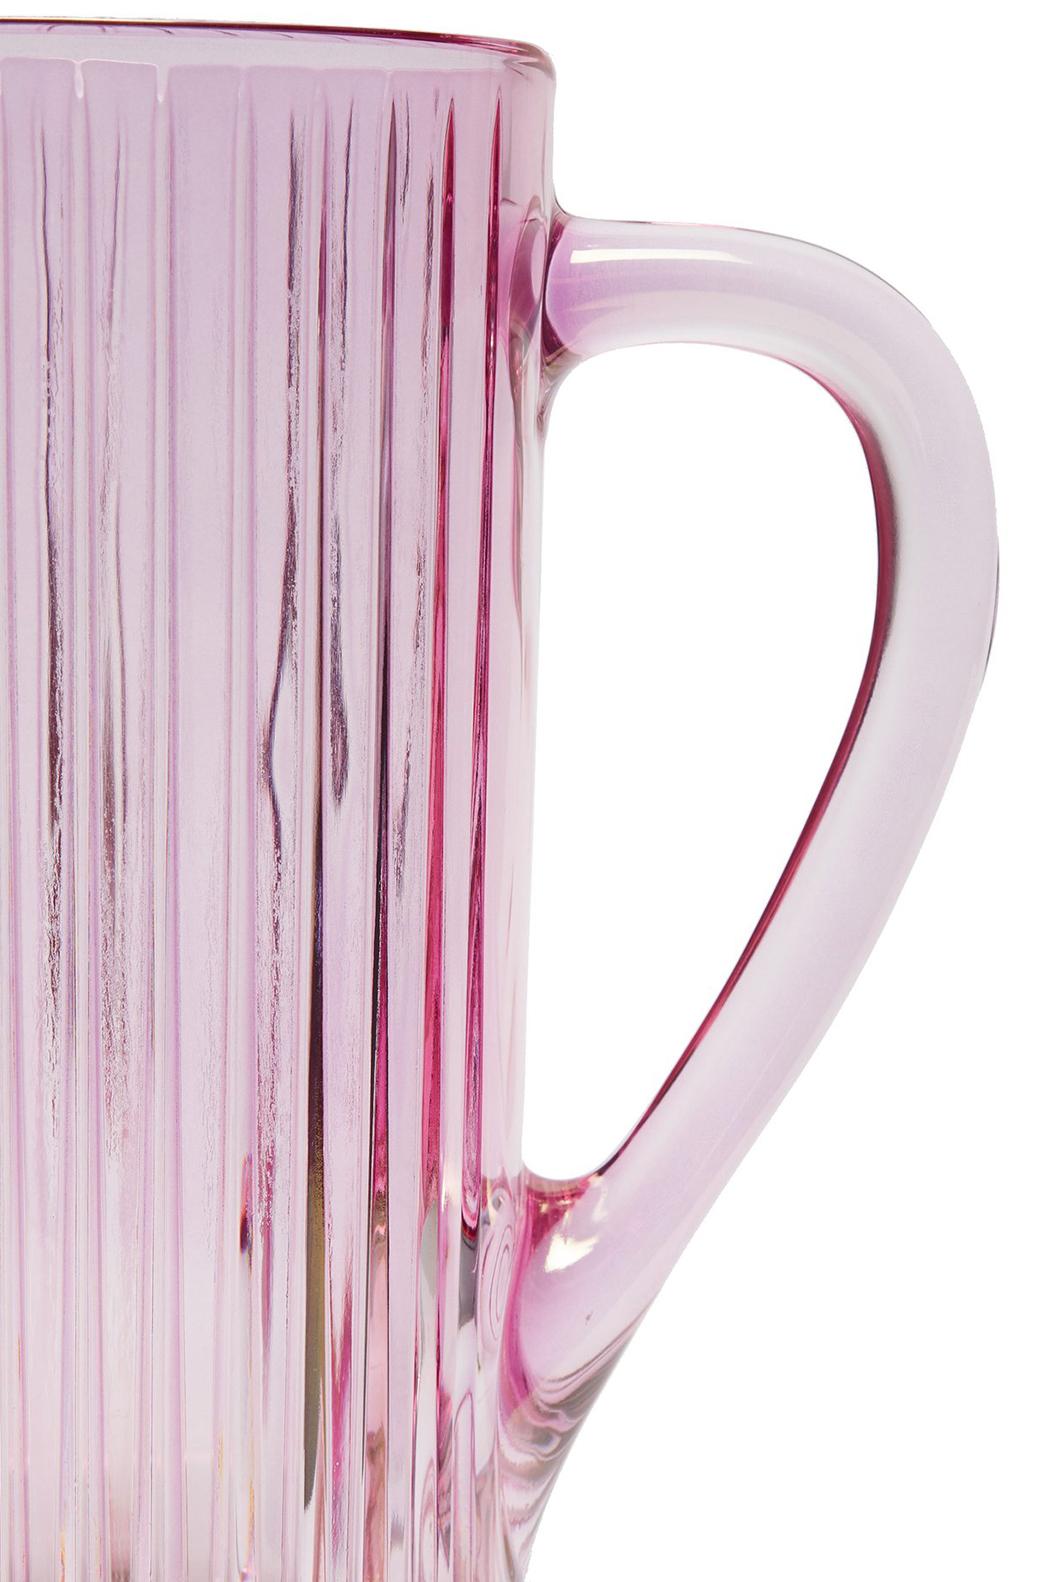 Dieser Glaskrug ist von Hand in einem kräftigen Rosaton gefärbt. Das äußere Glas ist vertikal gerillt und hat eine irisierende Oberfläche.

Zusammensetzung: Glas
Farbe: Rosa
Nur Handwäsche
Hergestellt in Italien